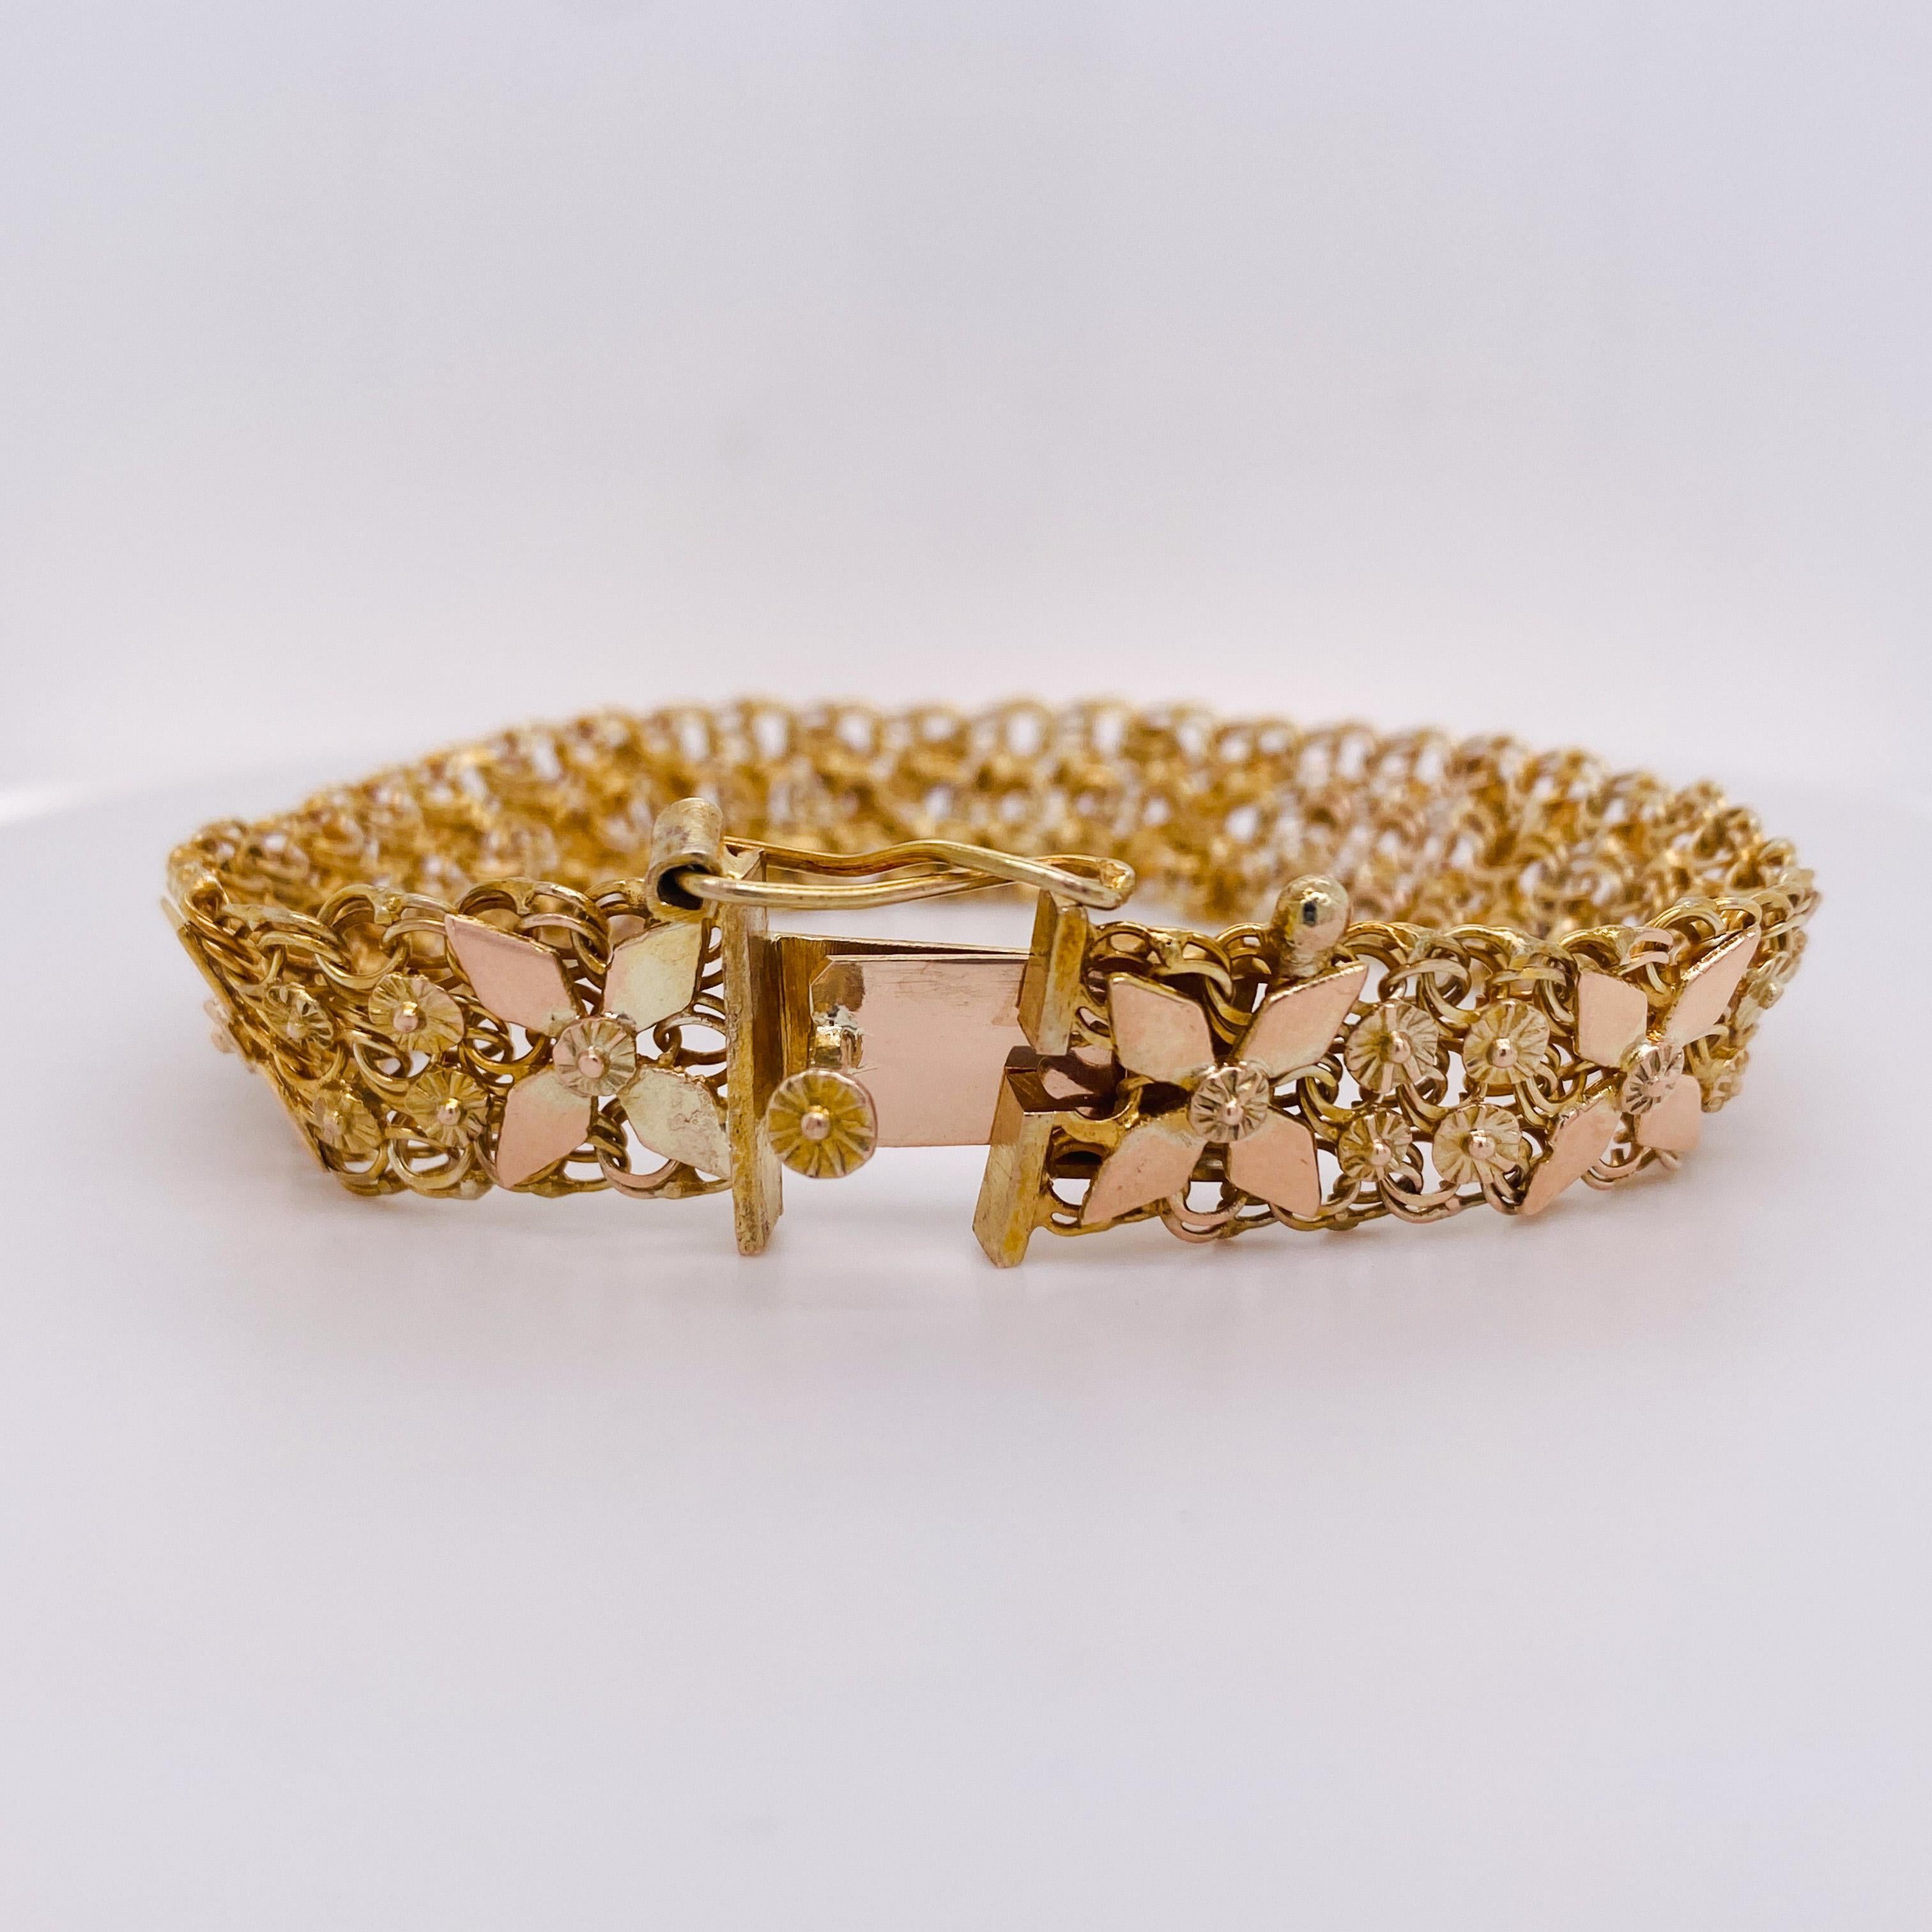 8k gold bracelet